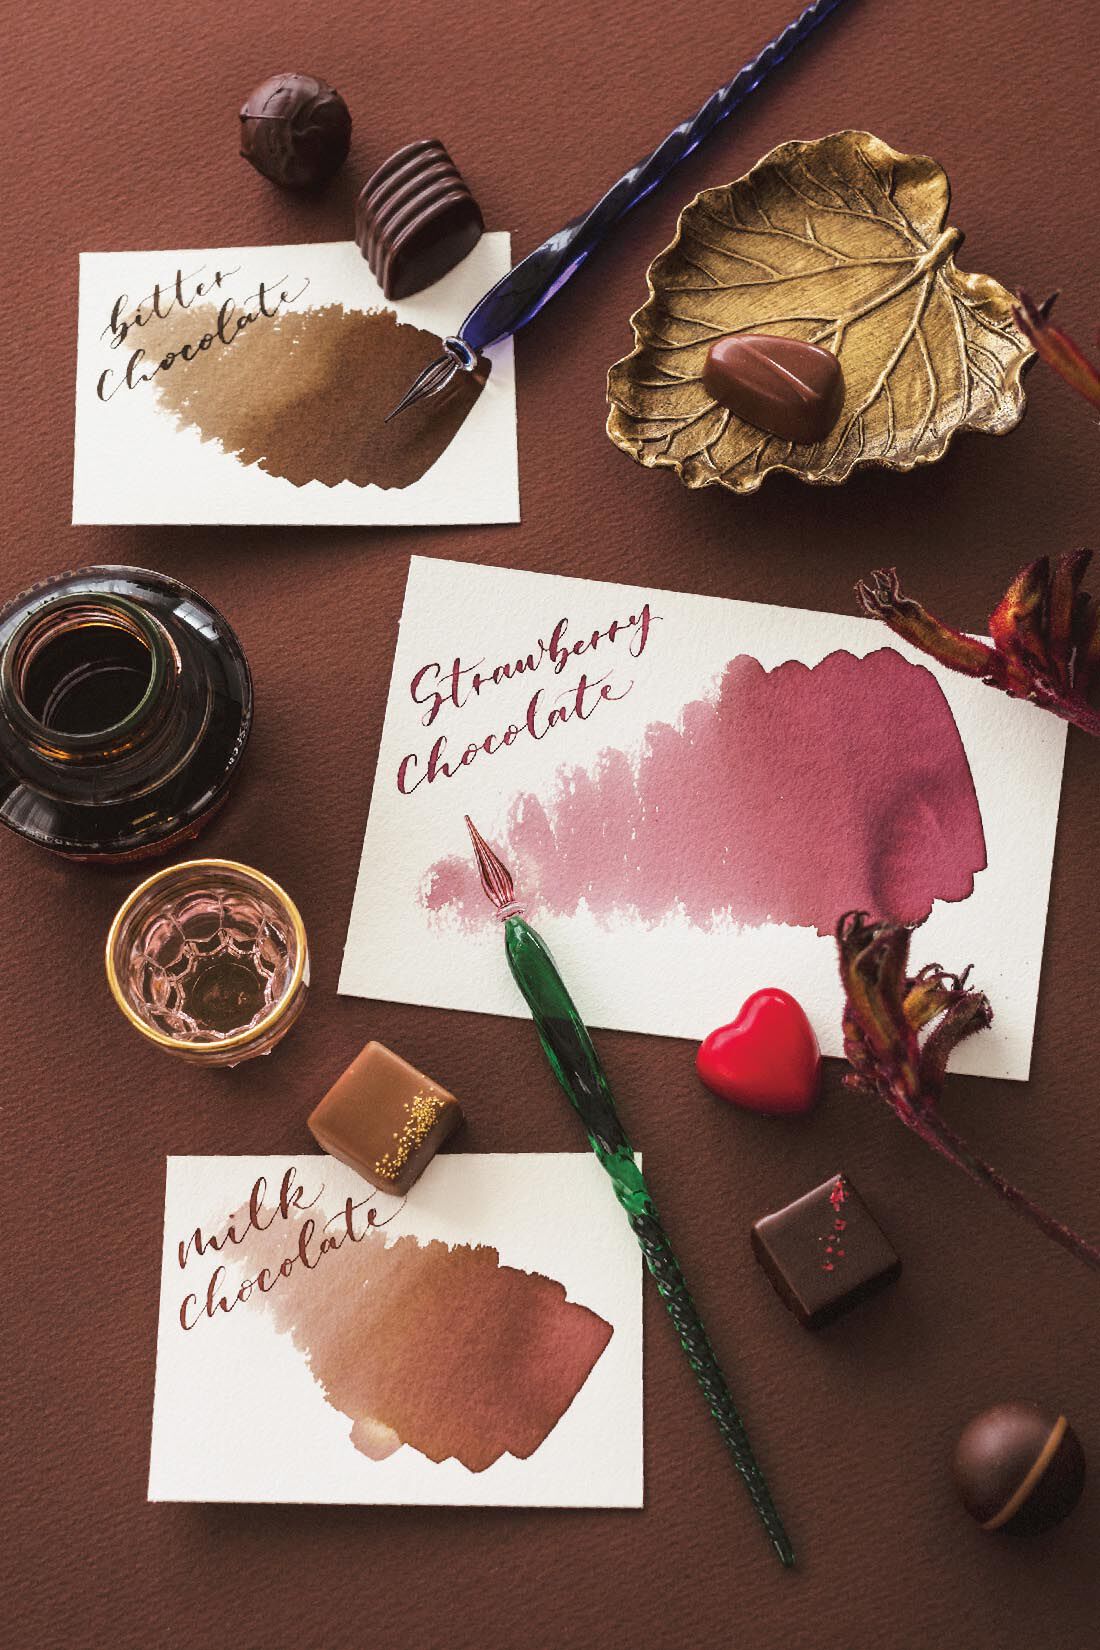 ミニツク|KobeＩＮＫ物語×felissimo chocolate museum　おいしそうなチョコレート色のインク〈ビターチョコレート色〉